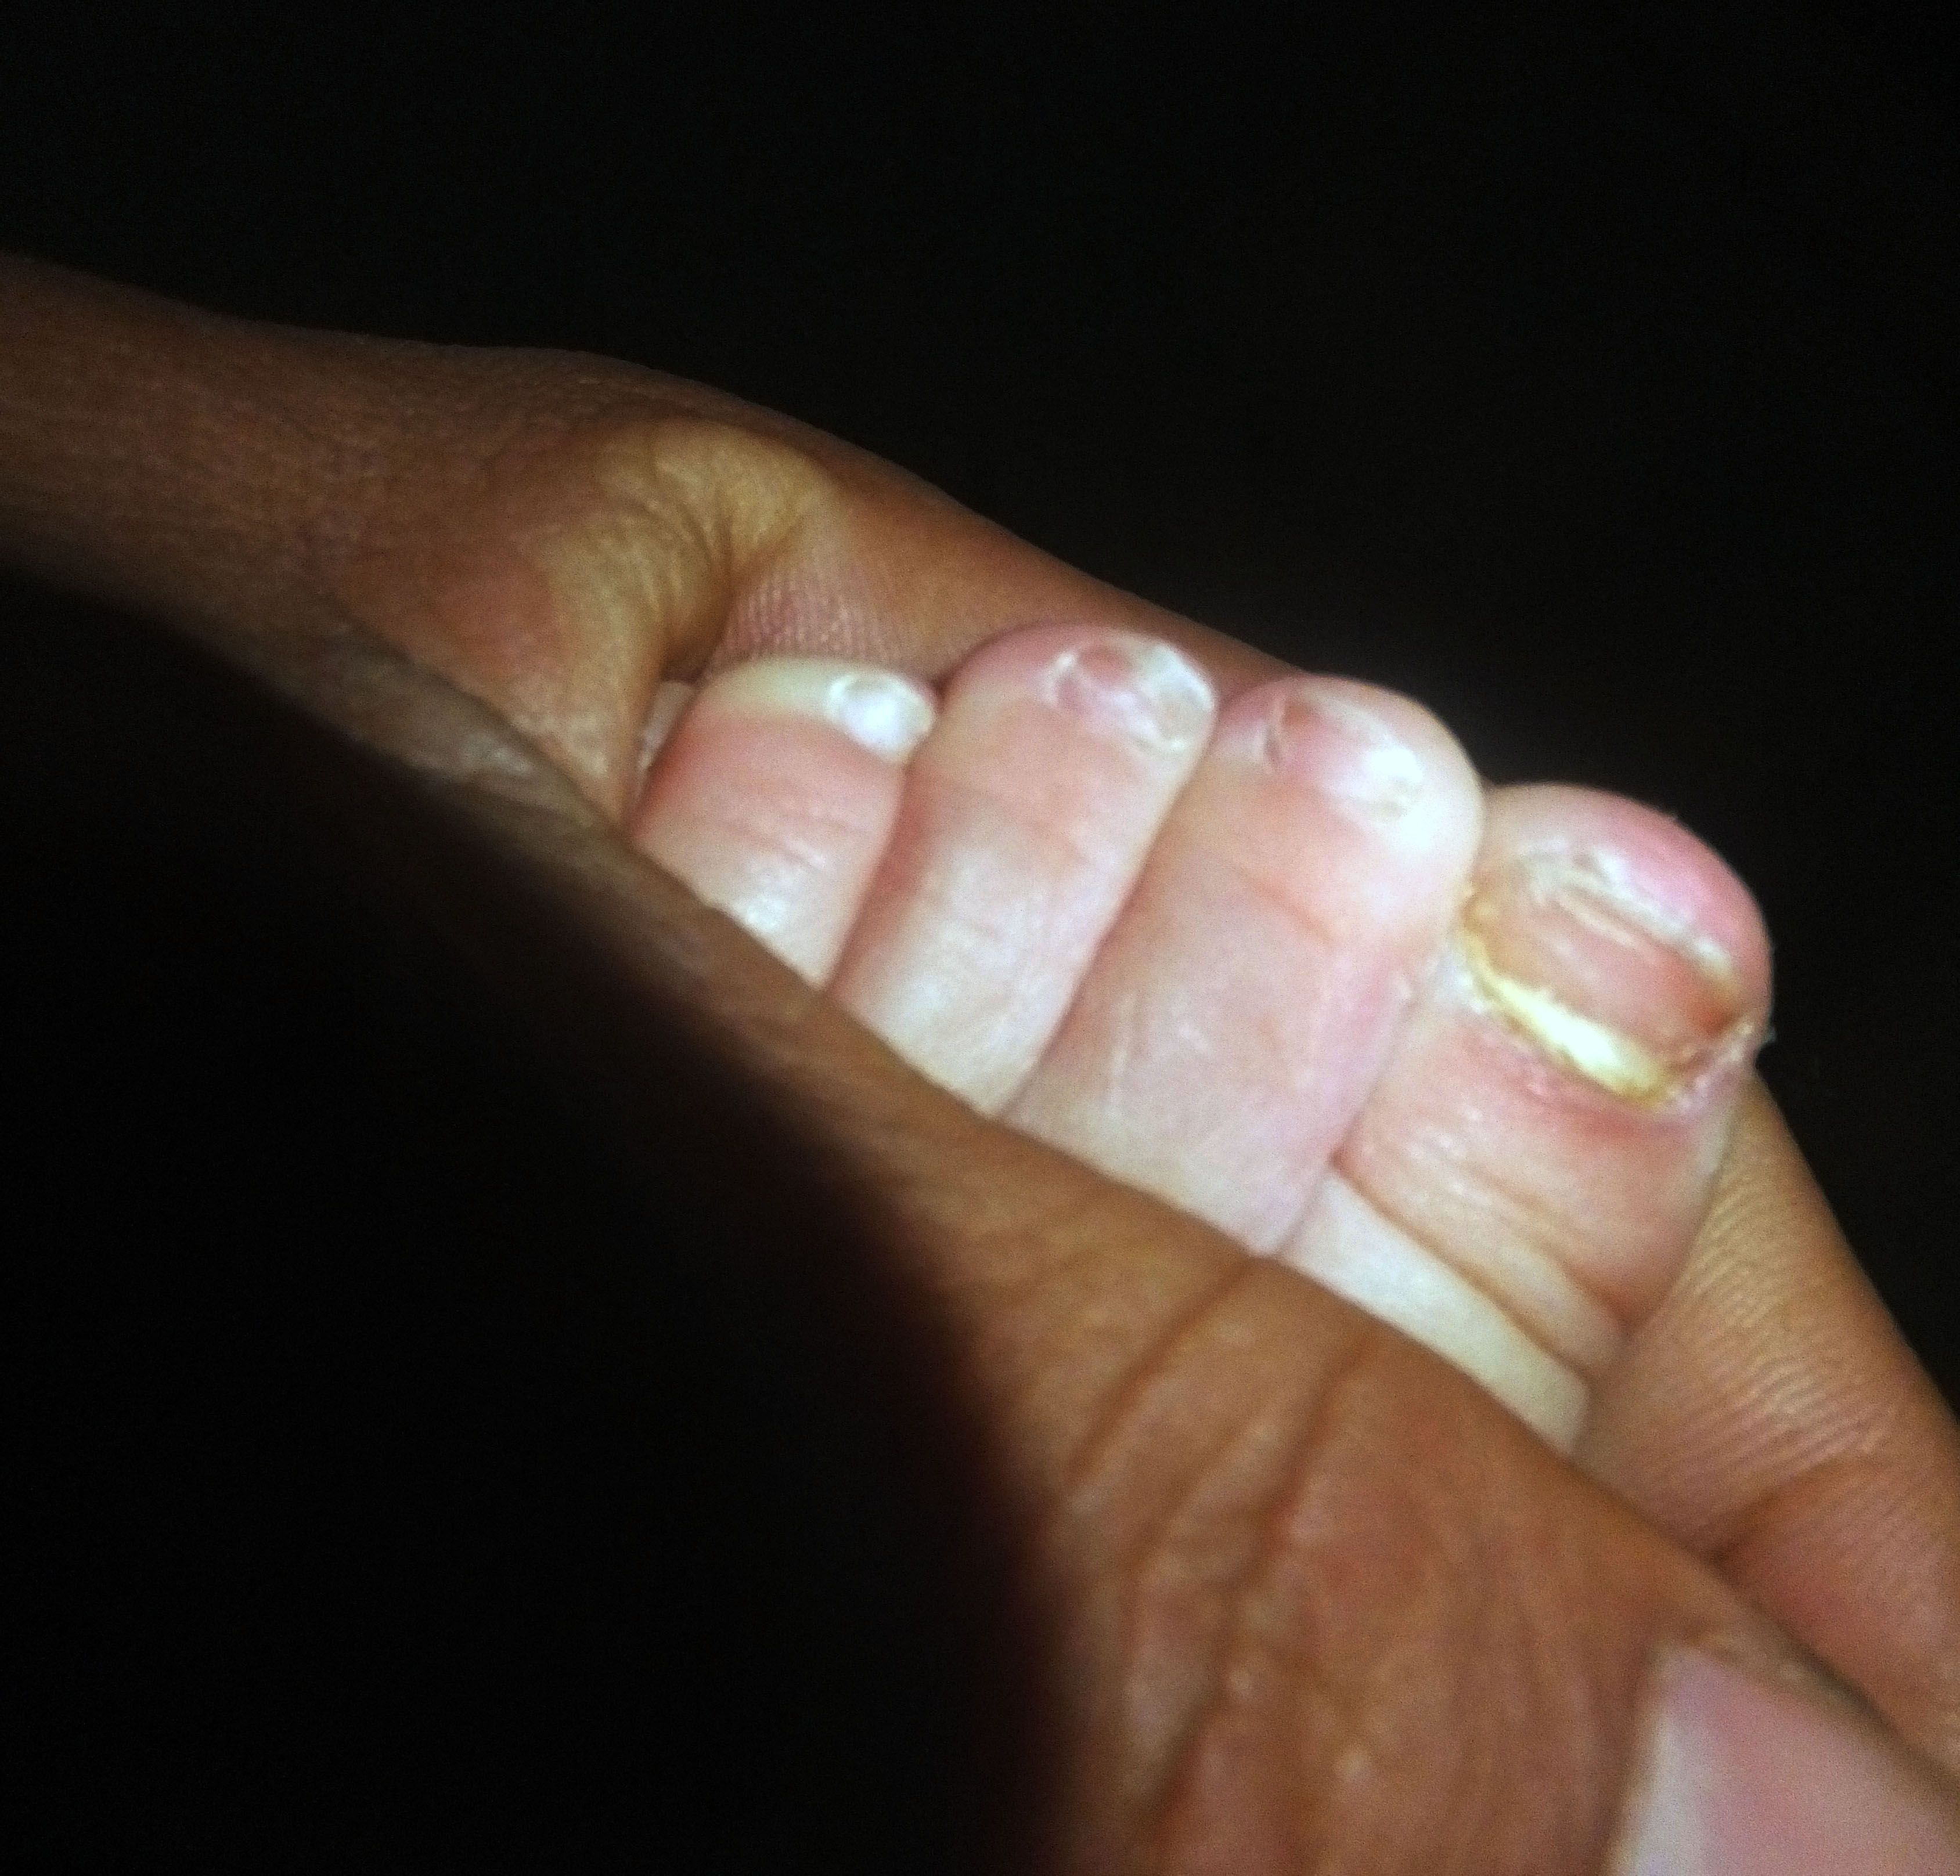 儿童灰指甲初期图片